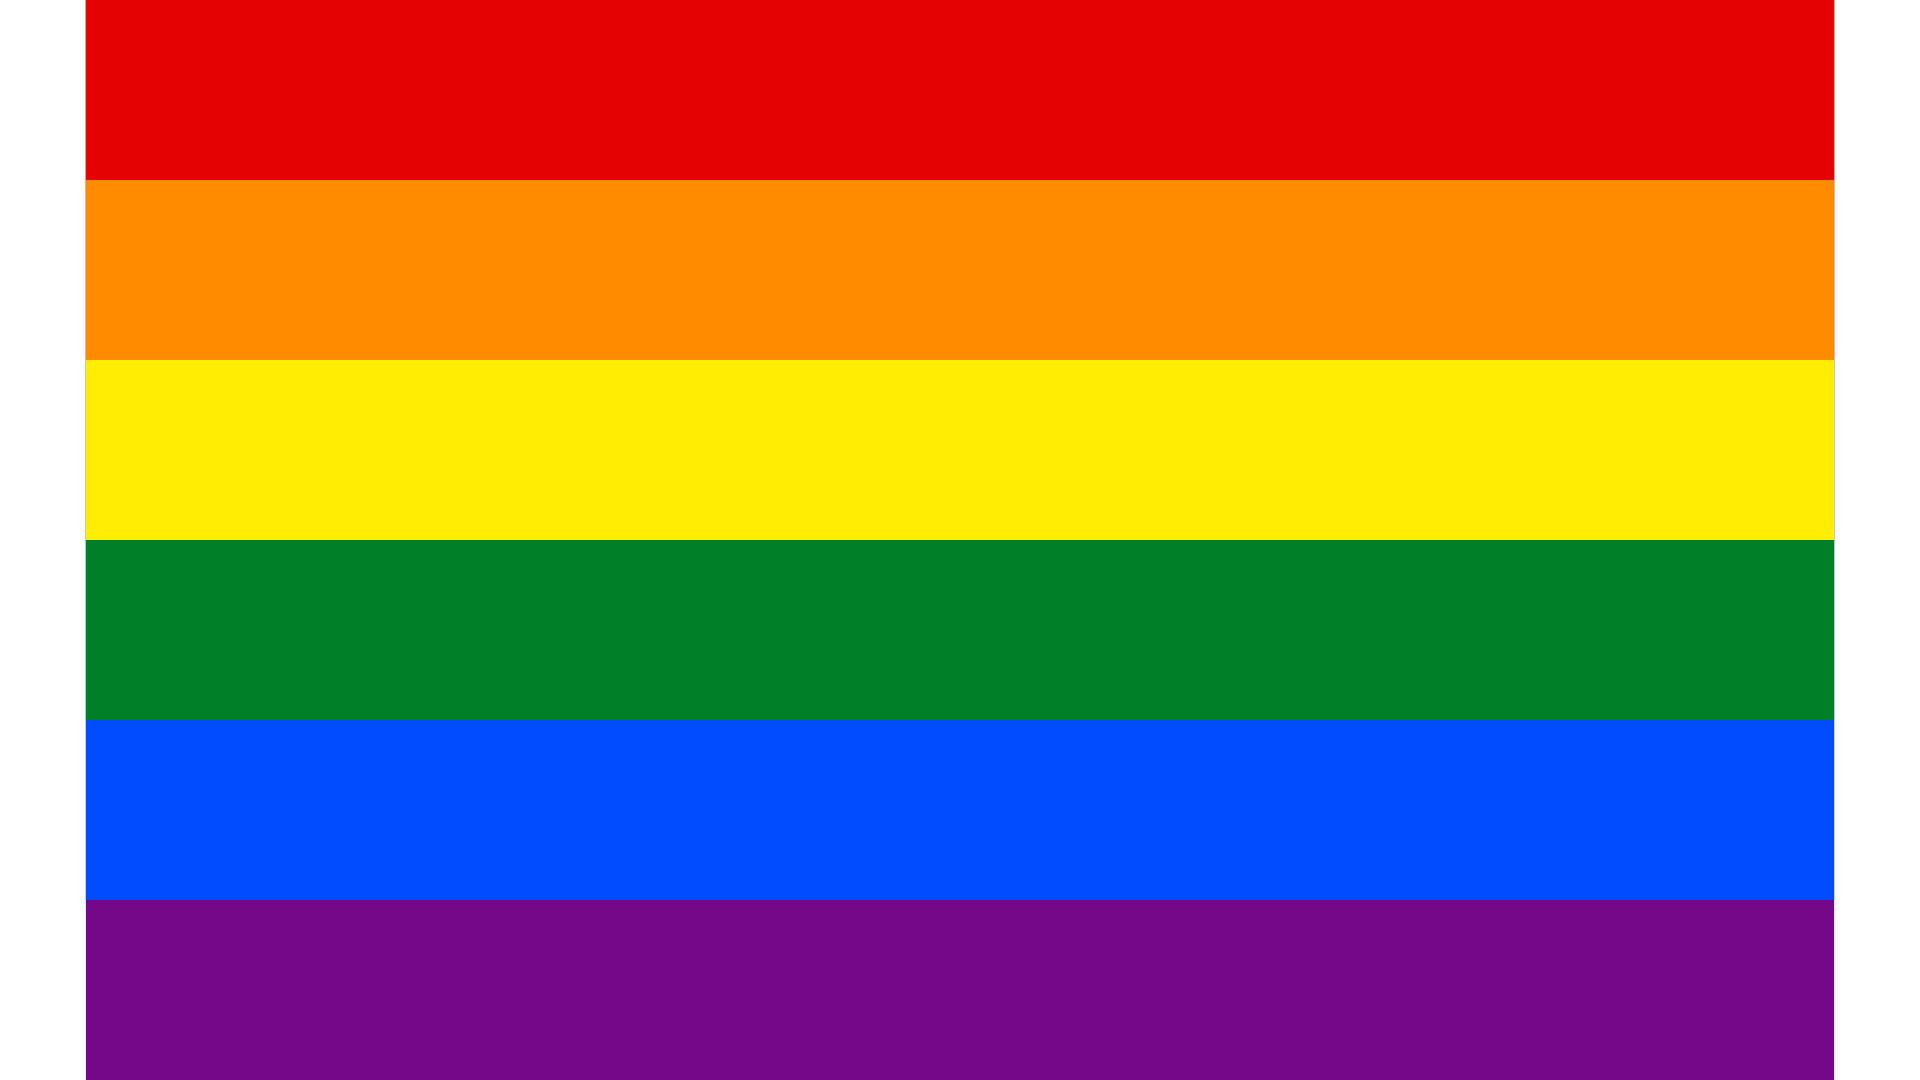 gay men pride flag wallpaper